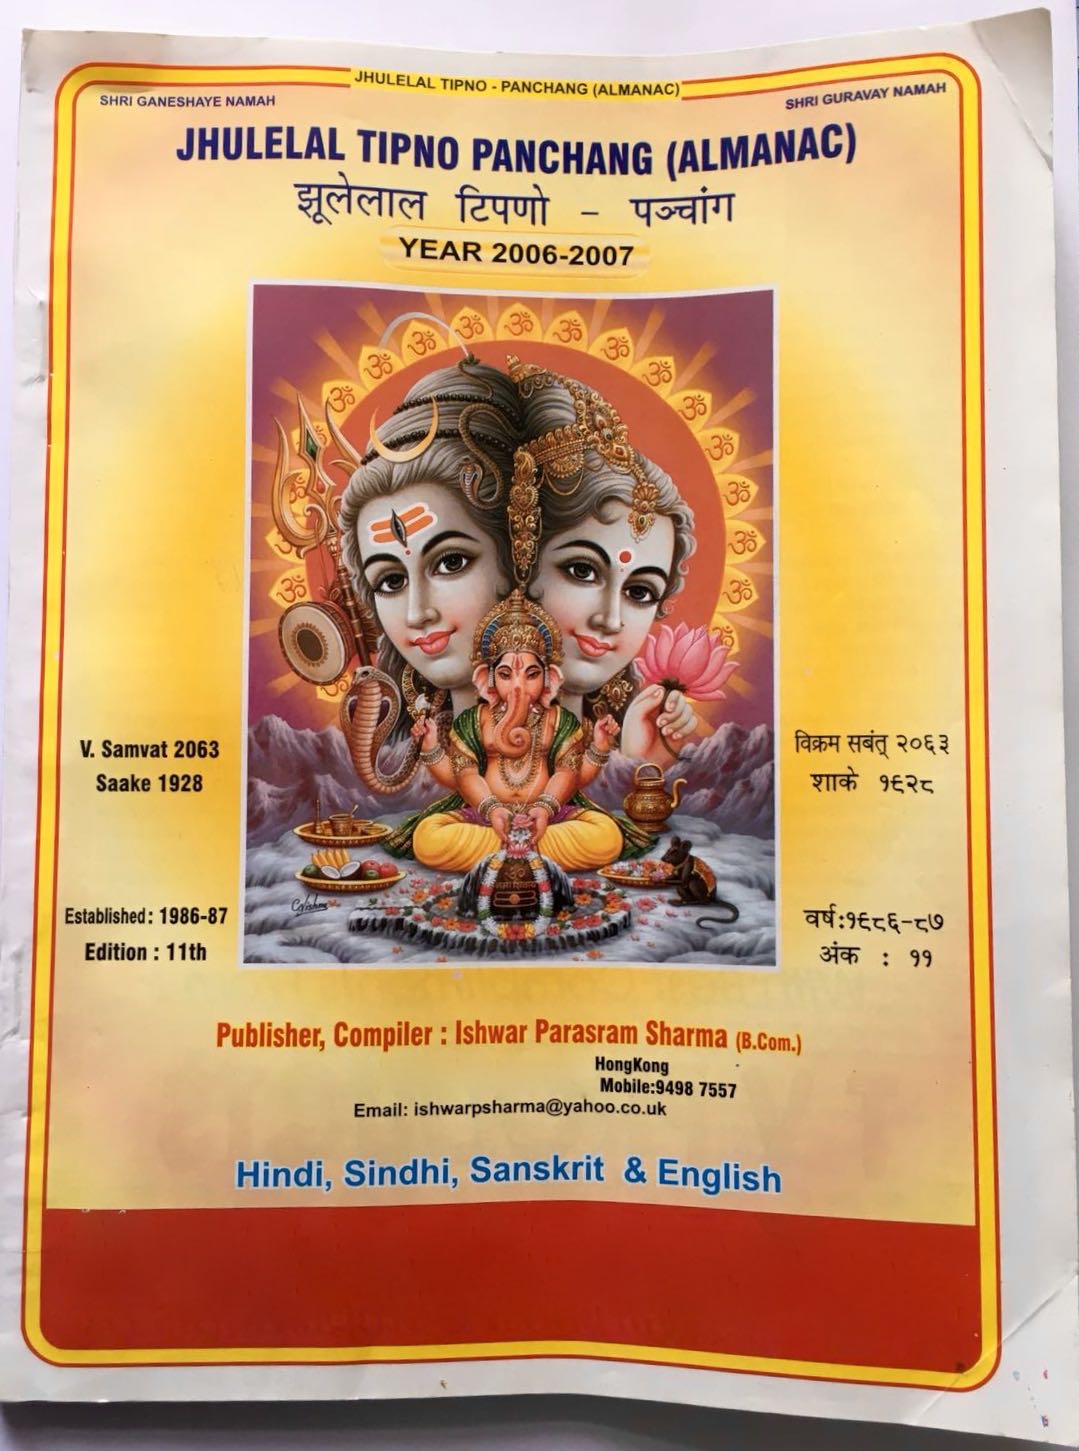 Jhulelal Tipno Panchang (Almanac) Year 2006-2007 compiled by Ishwar Parsram Sharma in Hindi, Sindhi, Sanskrit and English -Top cover page English and Hindi side